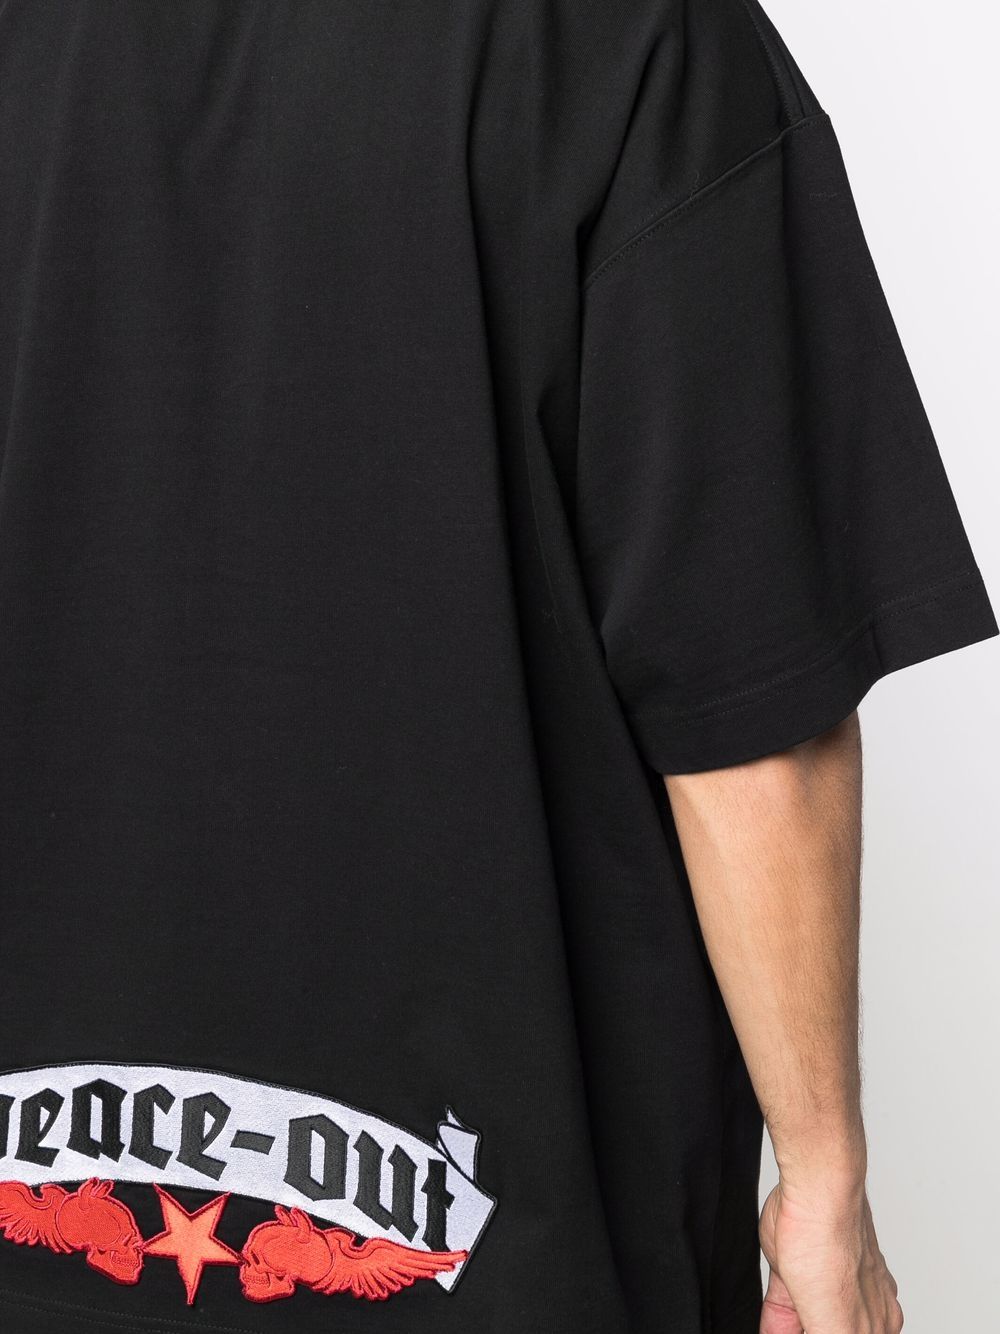 VETEMENTS Devil Wears VETEMENTS Patched T-Shirt Black - MAISONDEFASHION.COM